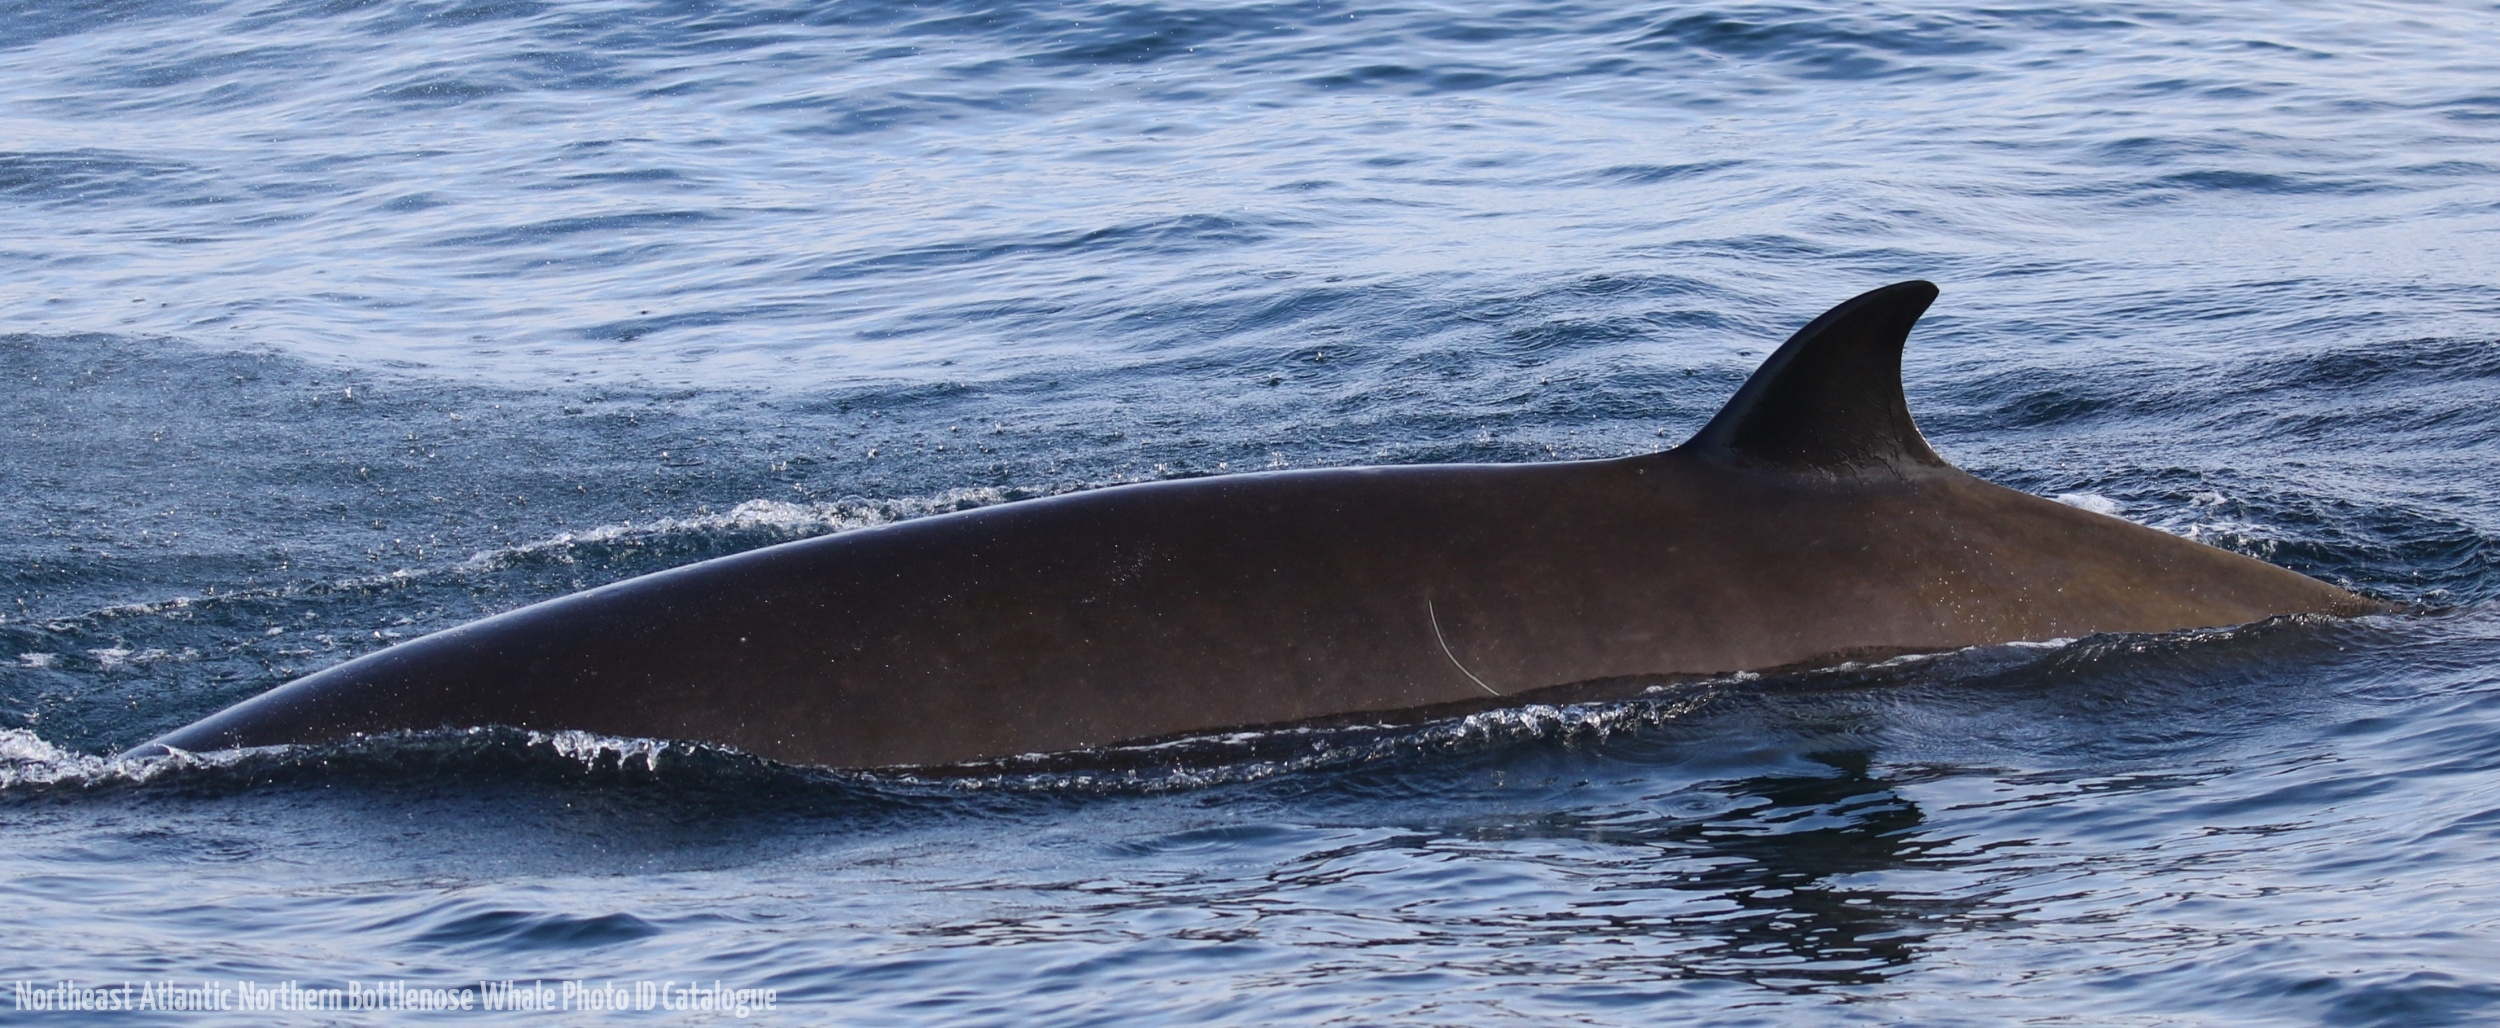 Whale ID: 0209,  Date taken: 21-06-2016,  Photographer: Eilidh Siegal